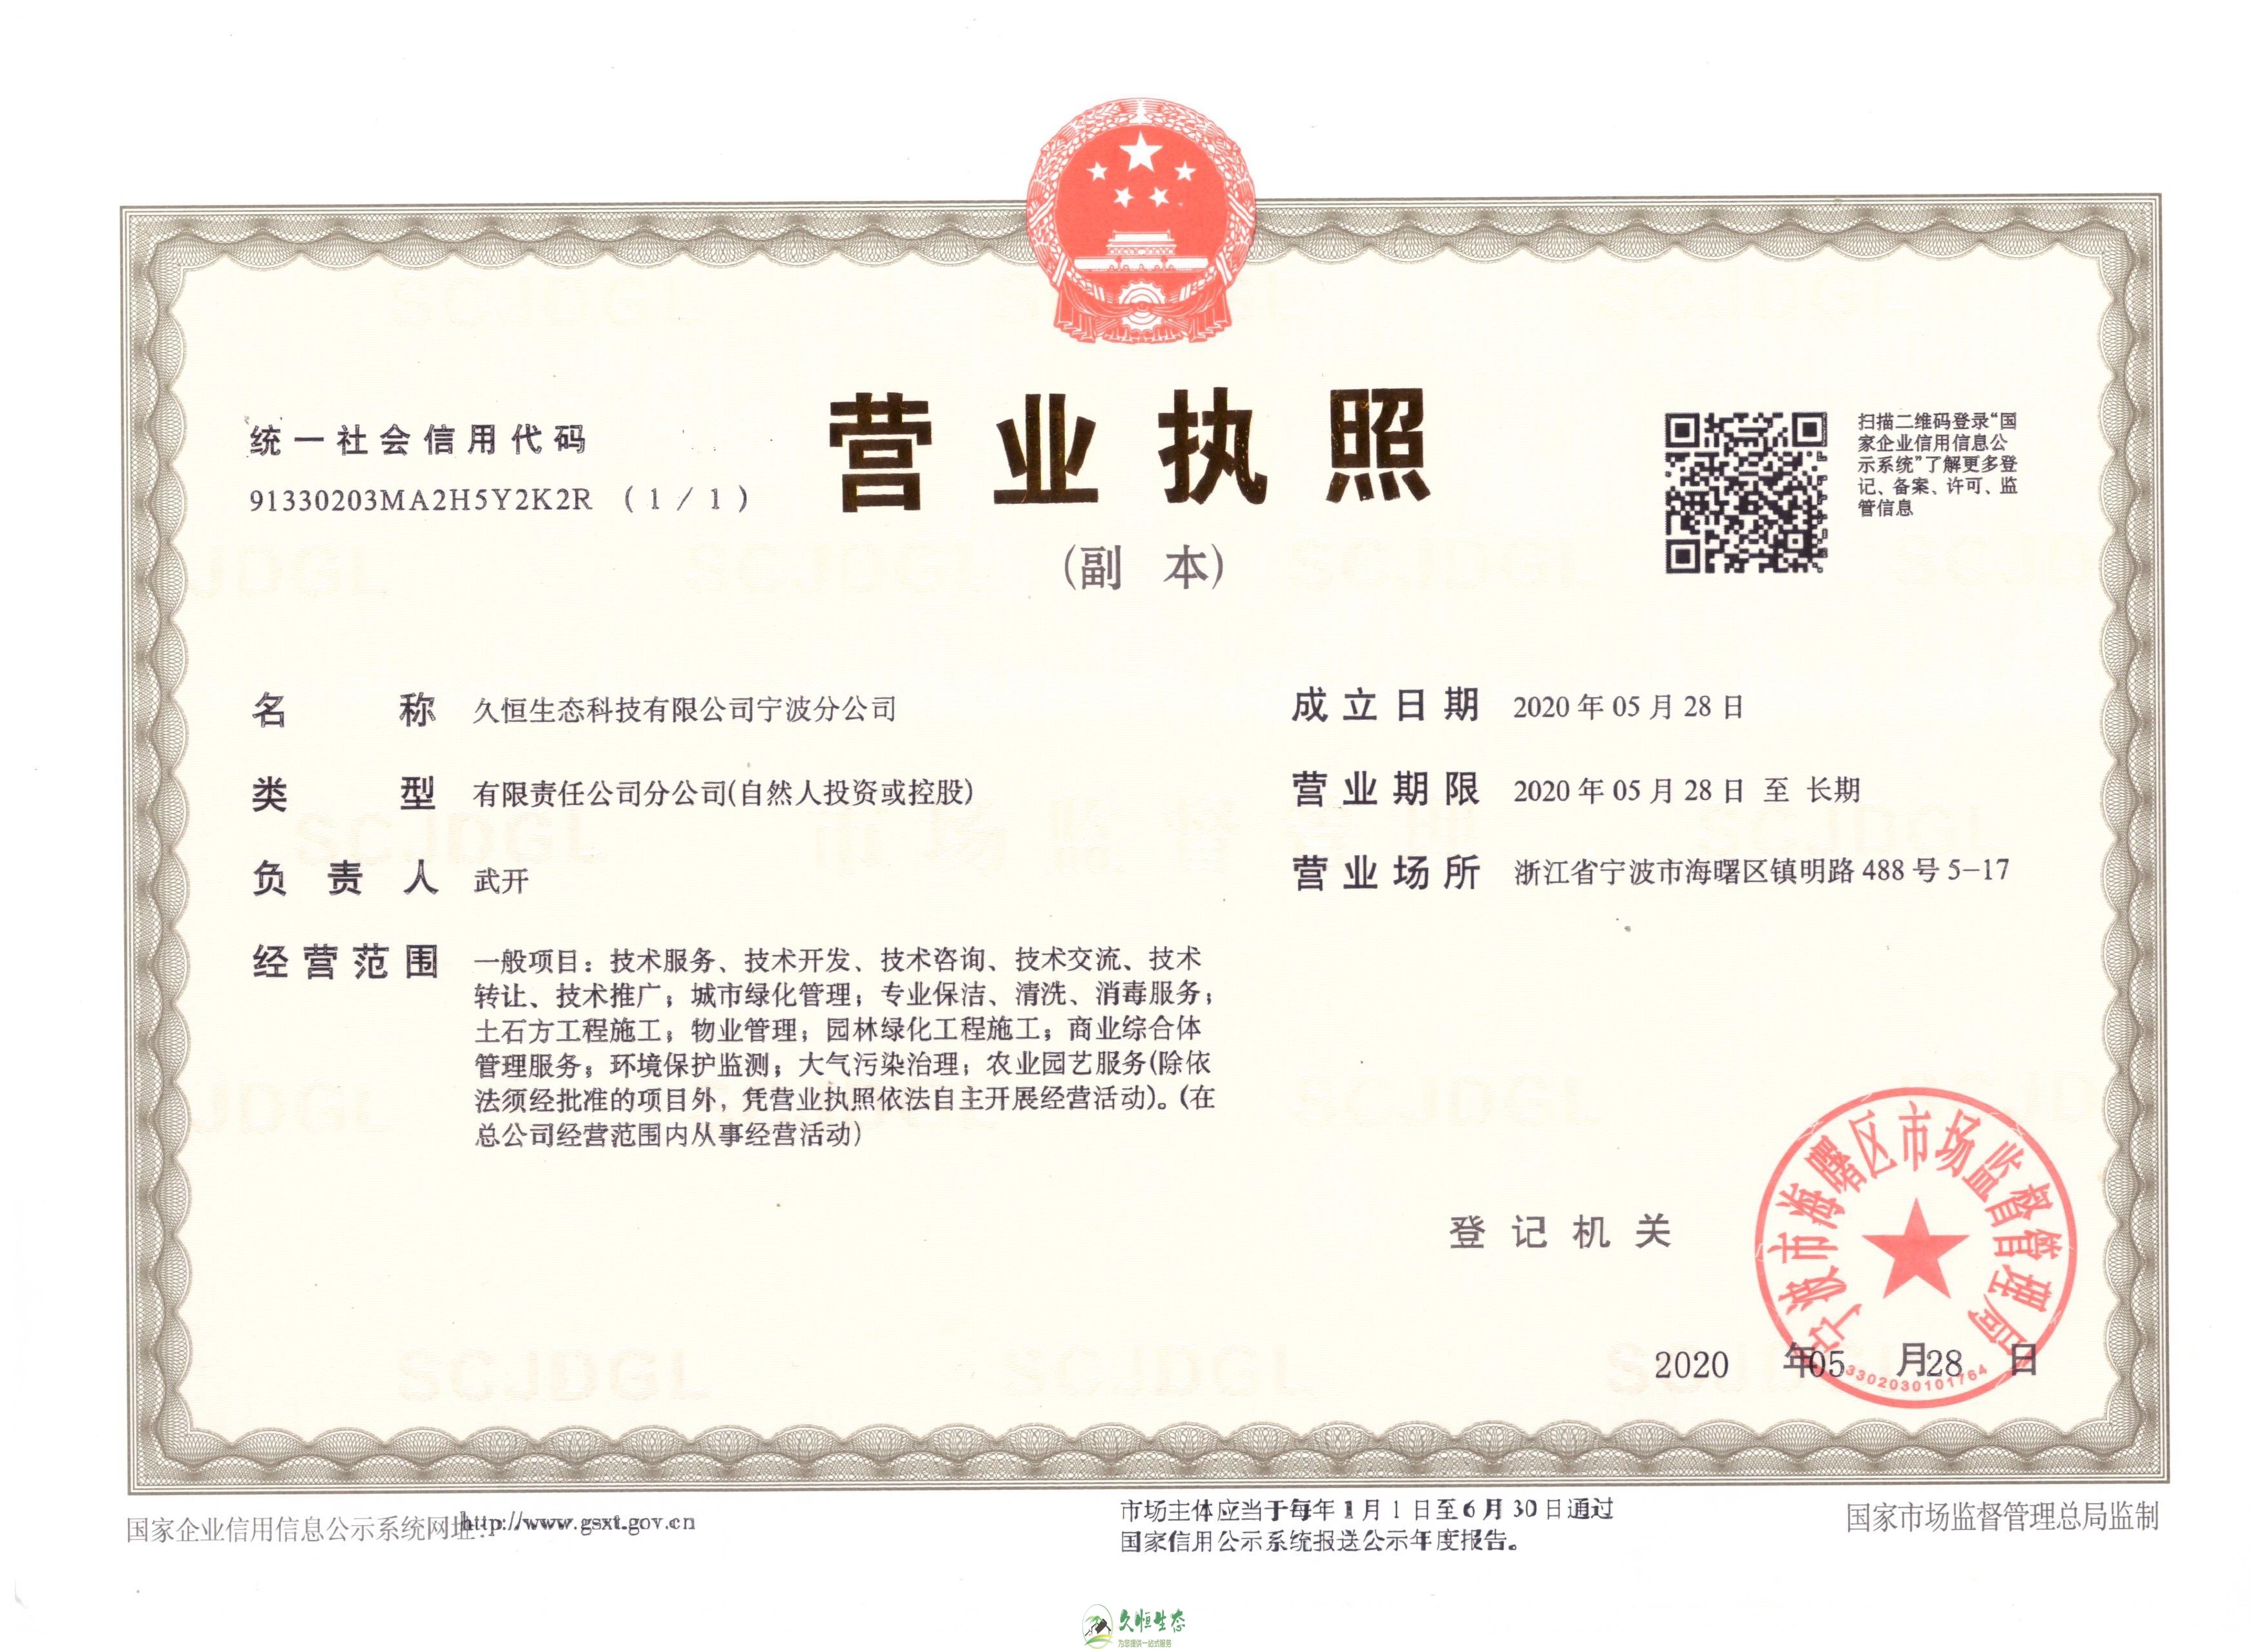 南京溧水久恒生态宁波分公司2020年5月28日成立